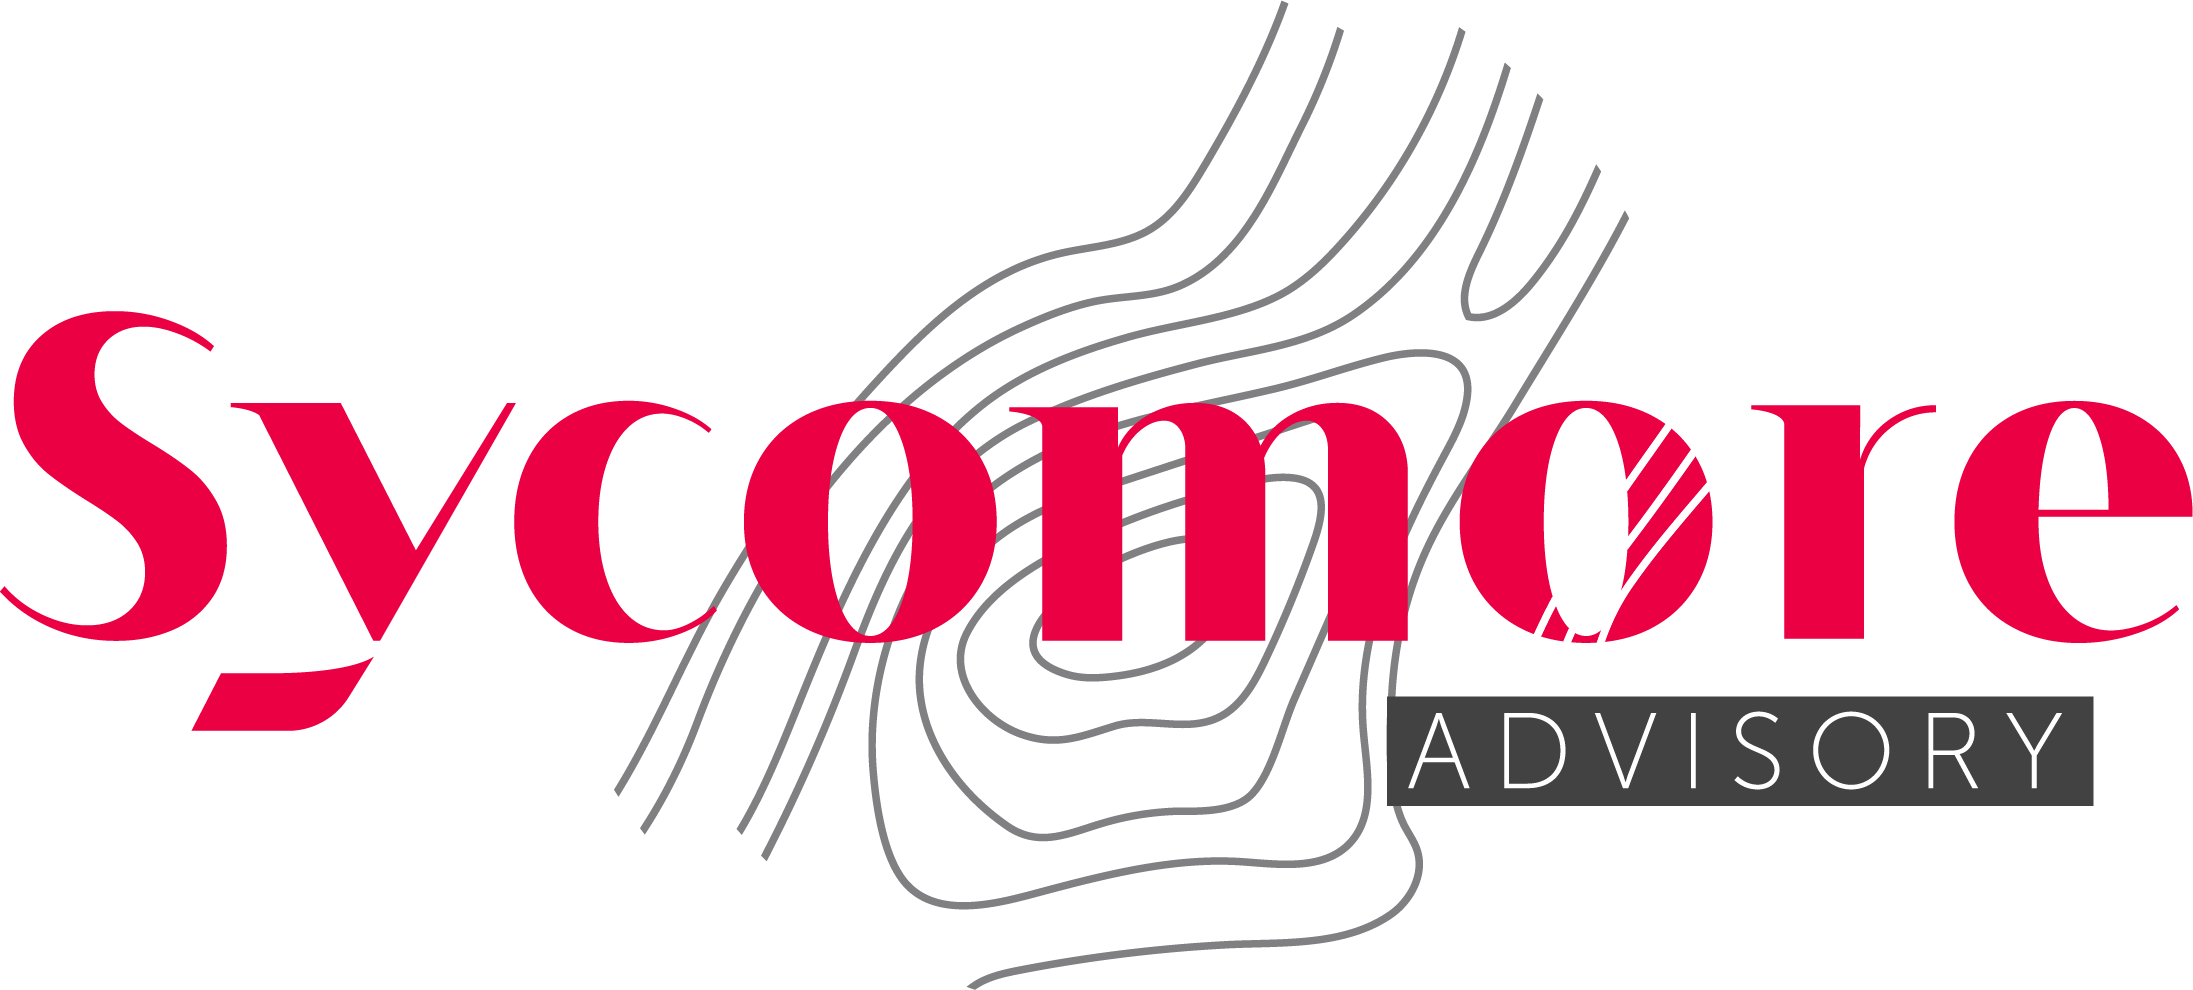 Sycomore Advisory Logo